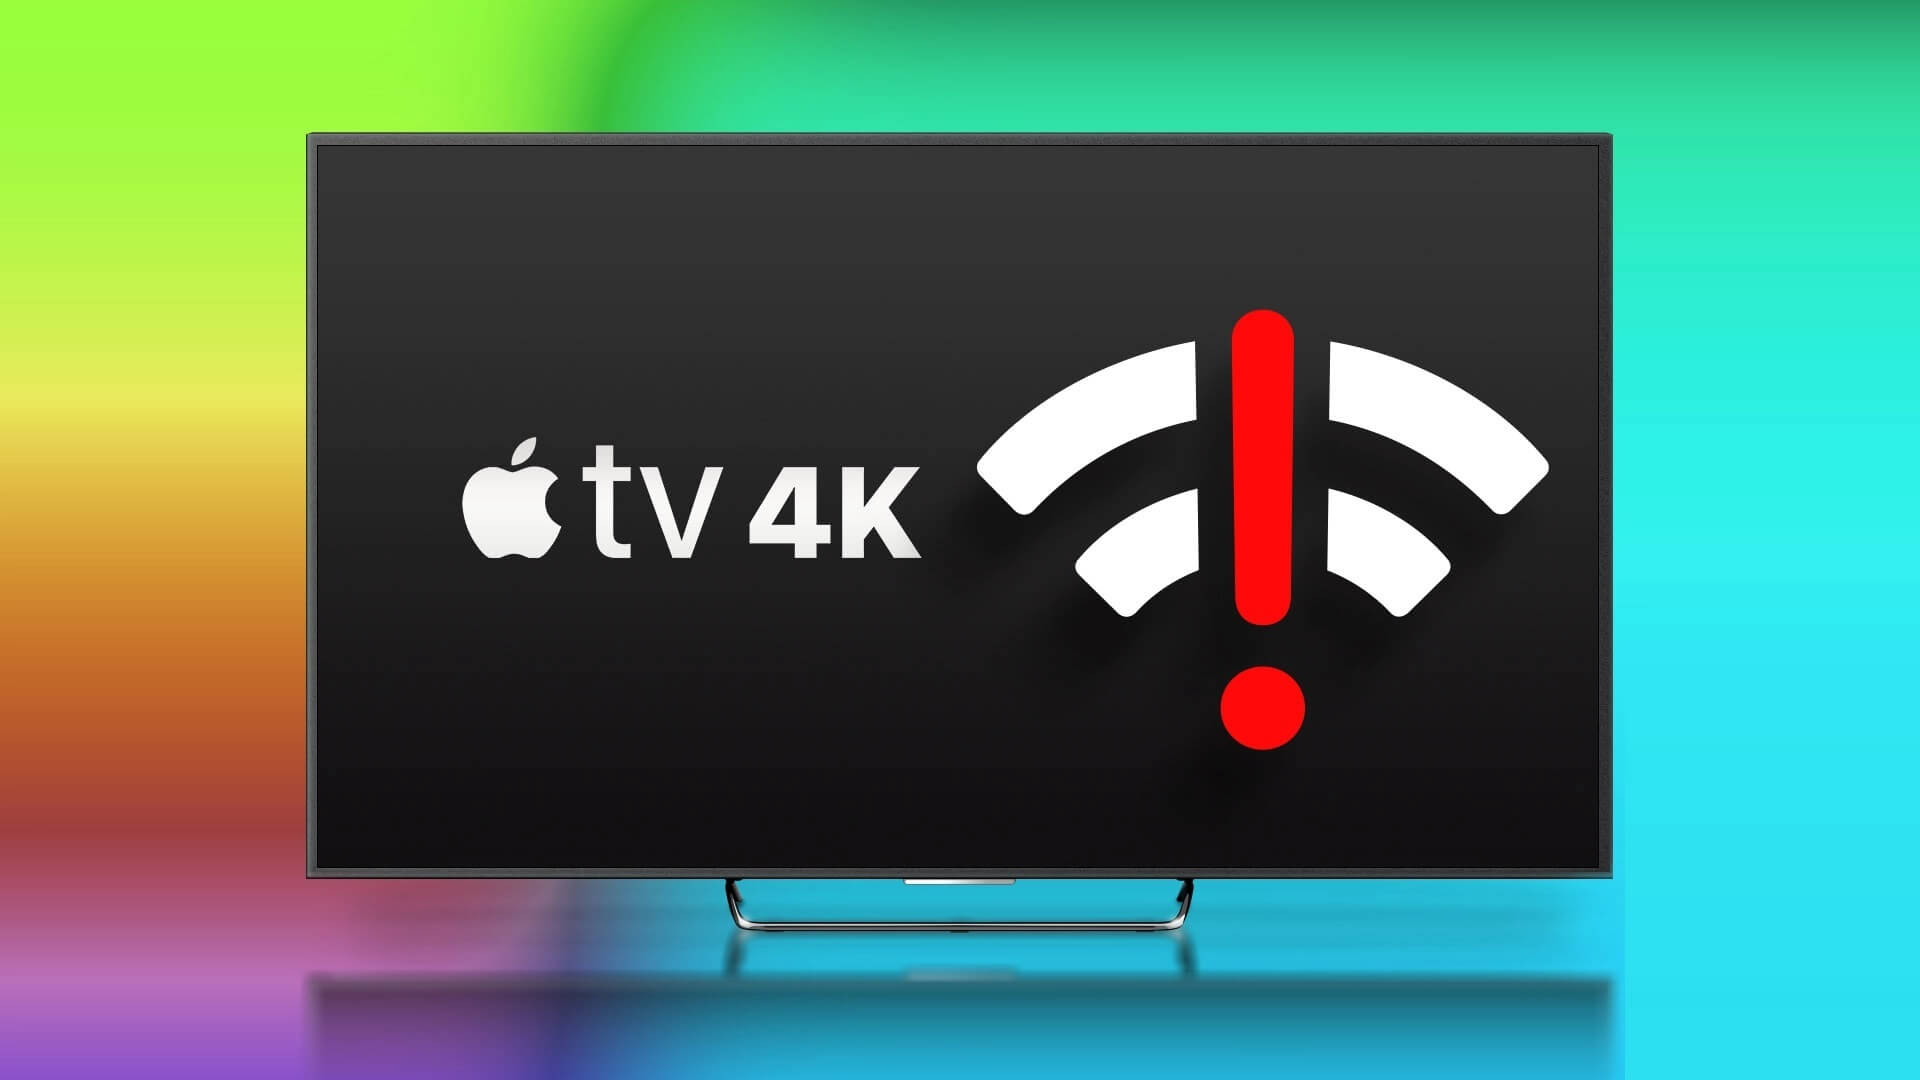 N Best Fixes for Apple TV 4K Not Connecting to Wi Fi - اجعل التكنولوجيا أسهل - دروس الكمبيوتر والنصائح والحيل و الصحة